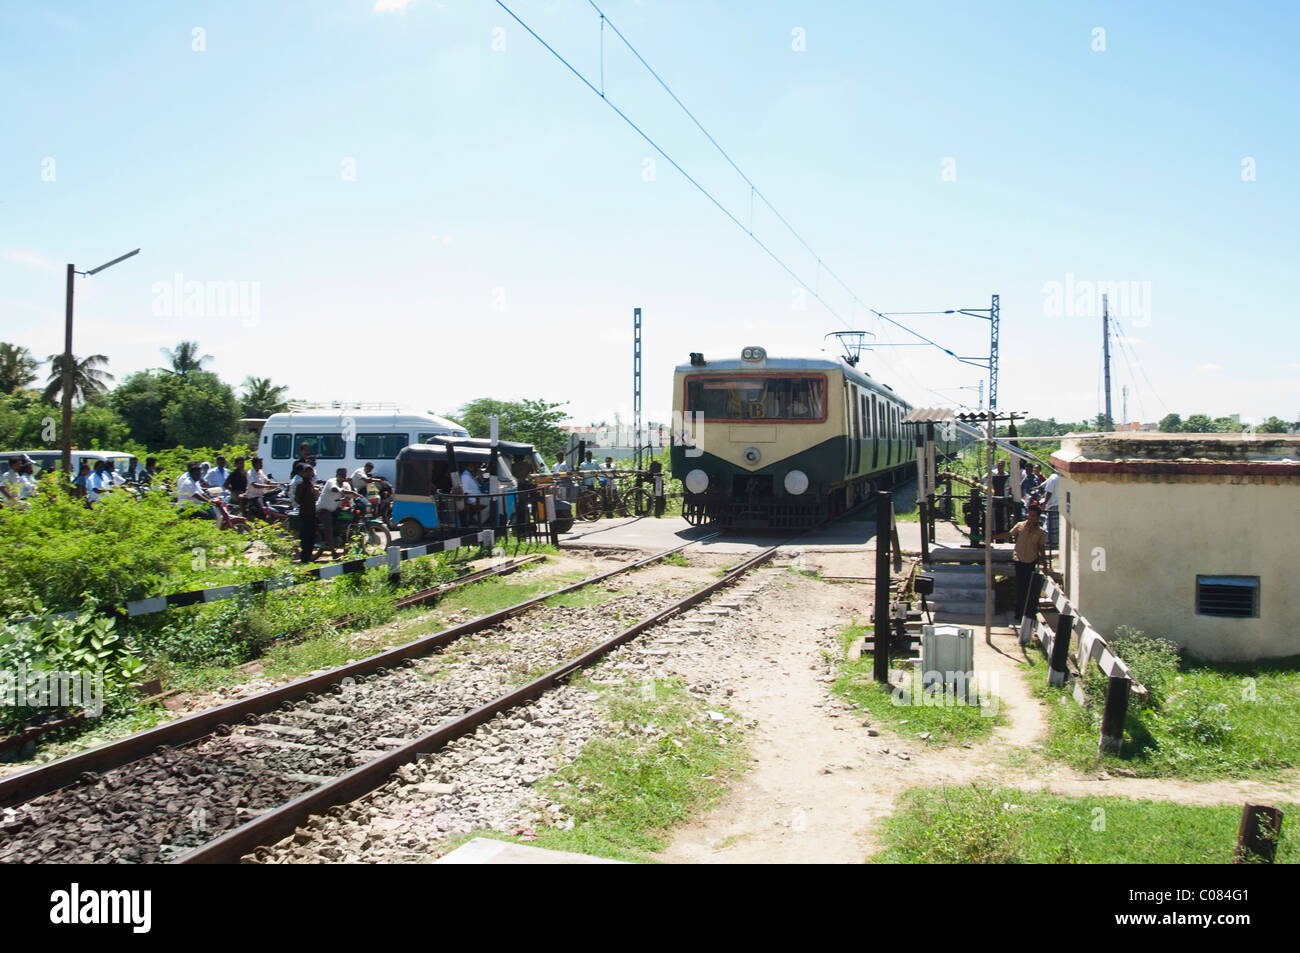 Déménagement de trains de voyageurs sur les voies ferrées, Kanchipuram, Tamil Nadu, Inde Banque D'Images